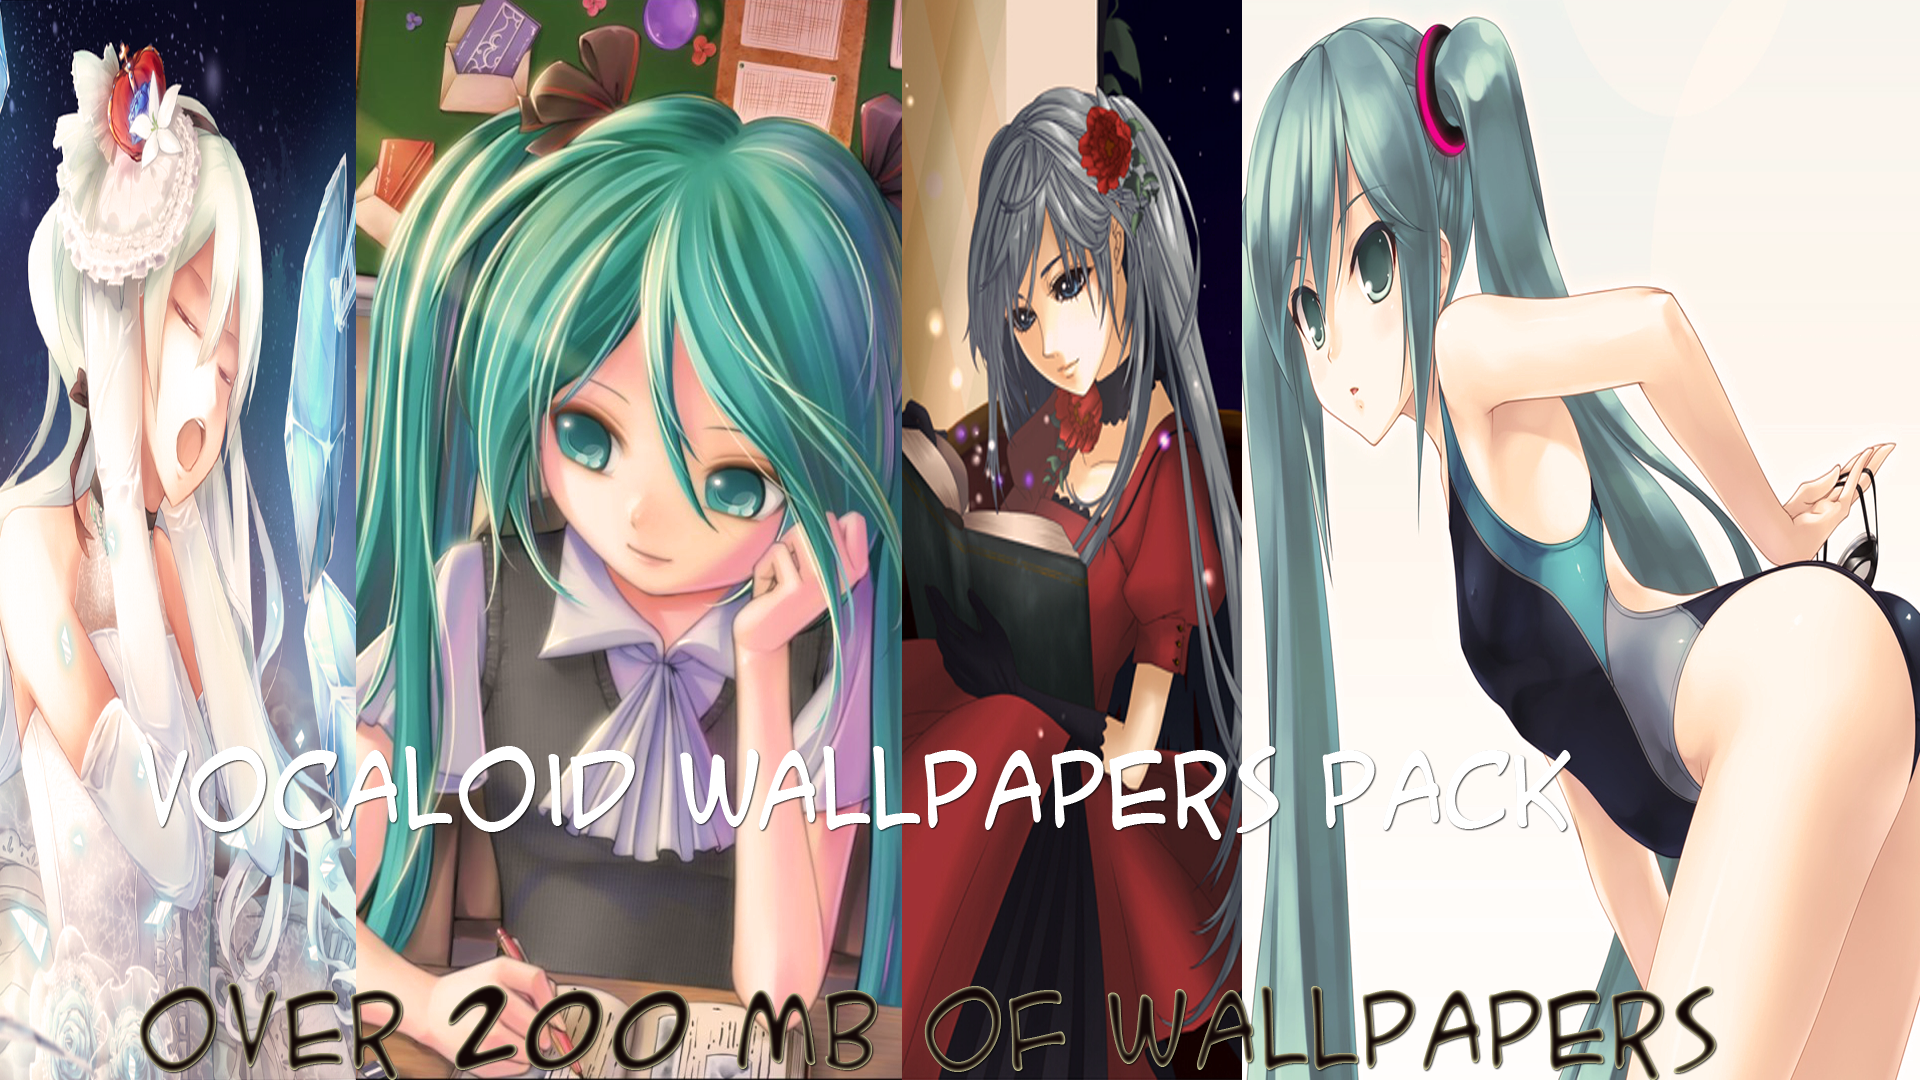 HD WALLPAPERS]Vocaloid Wallpapers Pack OVER 200 by KonekoSS on DeviantArt